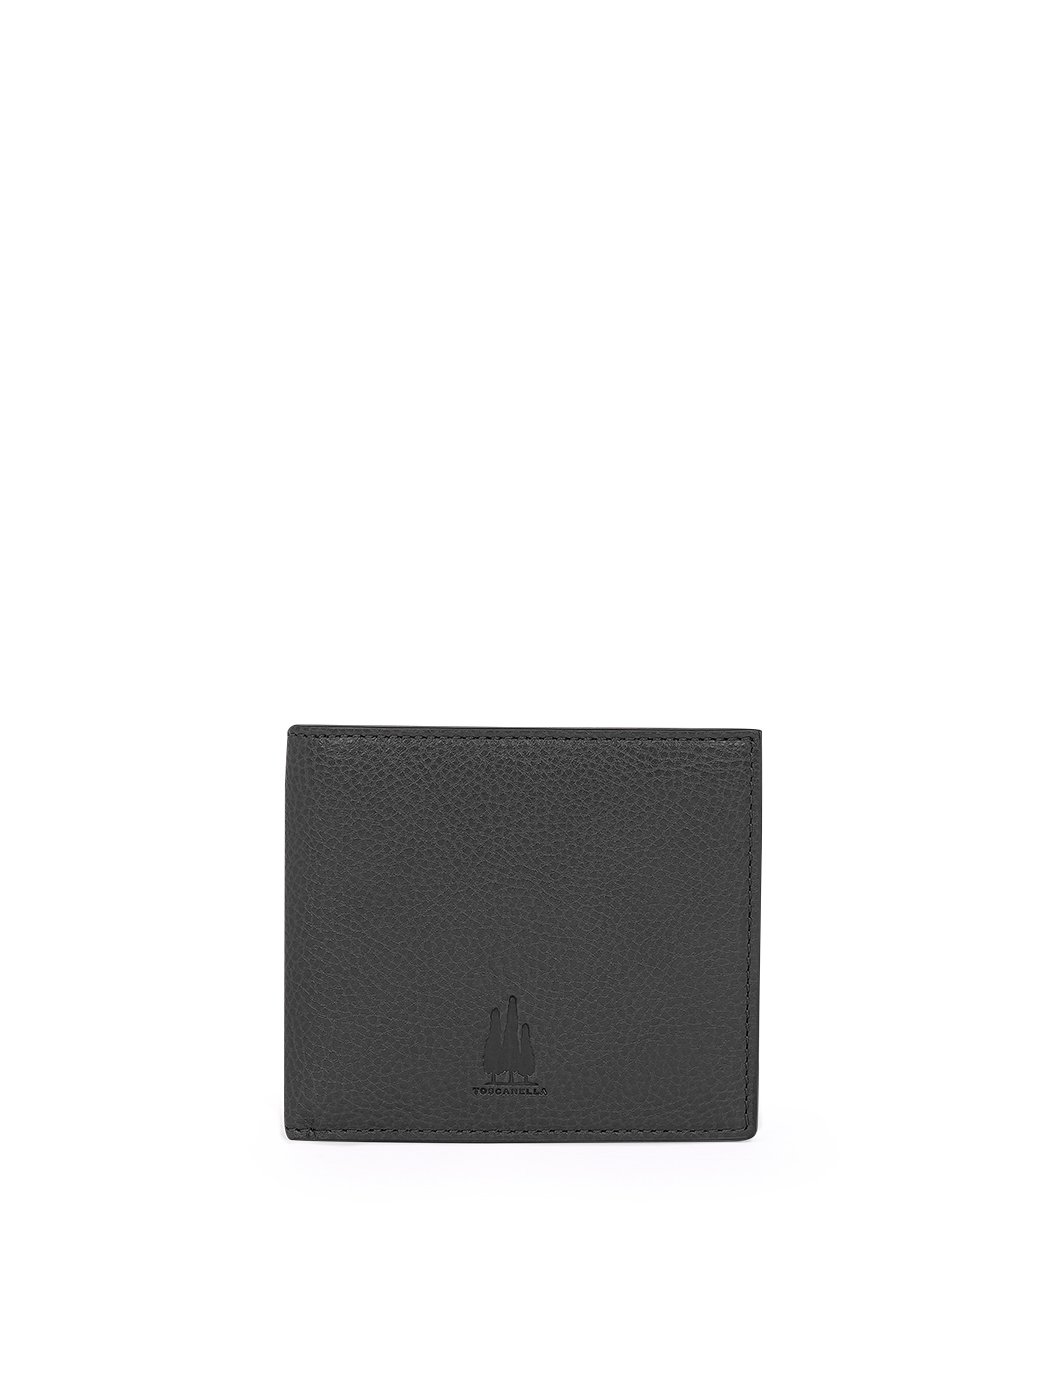 Billfold Wallet in Leather  Black